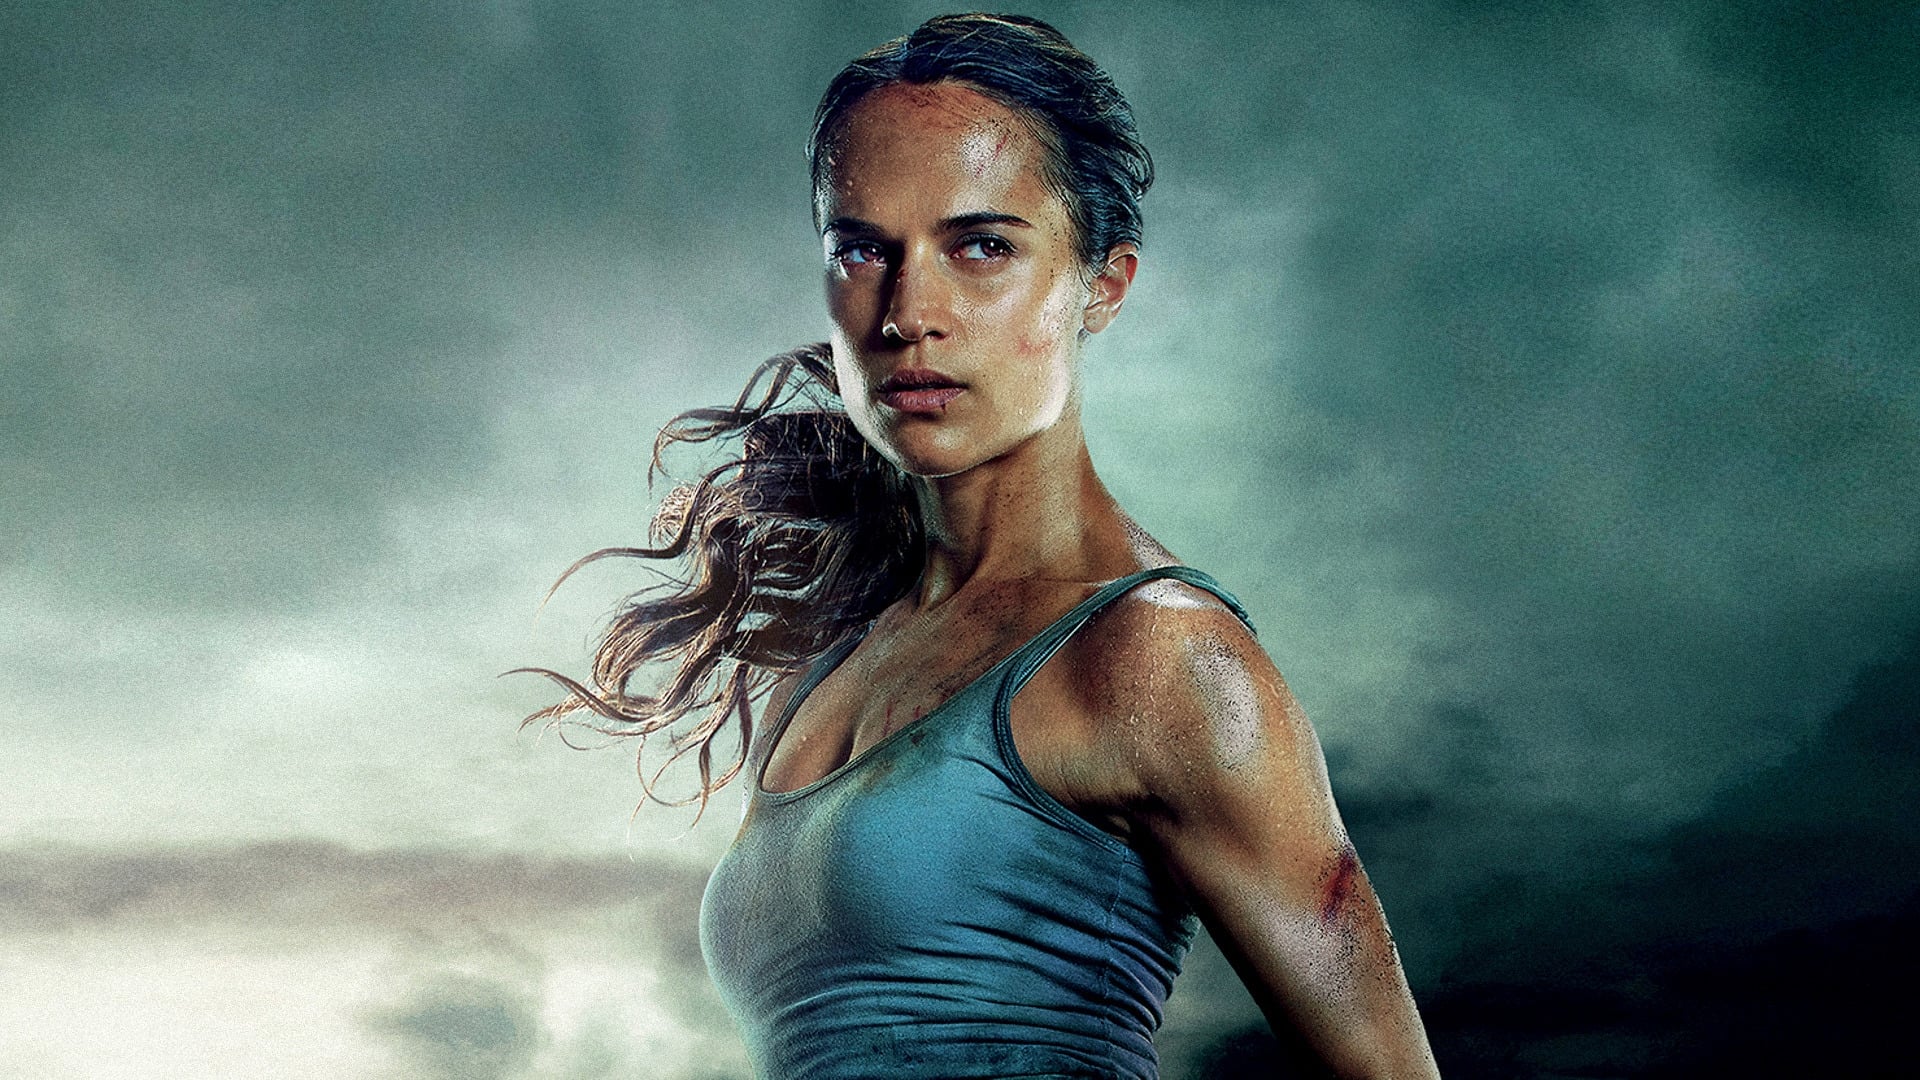 Image du film Tomb Raider yvlavngrwjmxb3txxwa24xursnpjpg